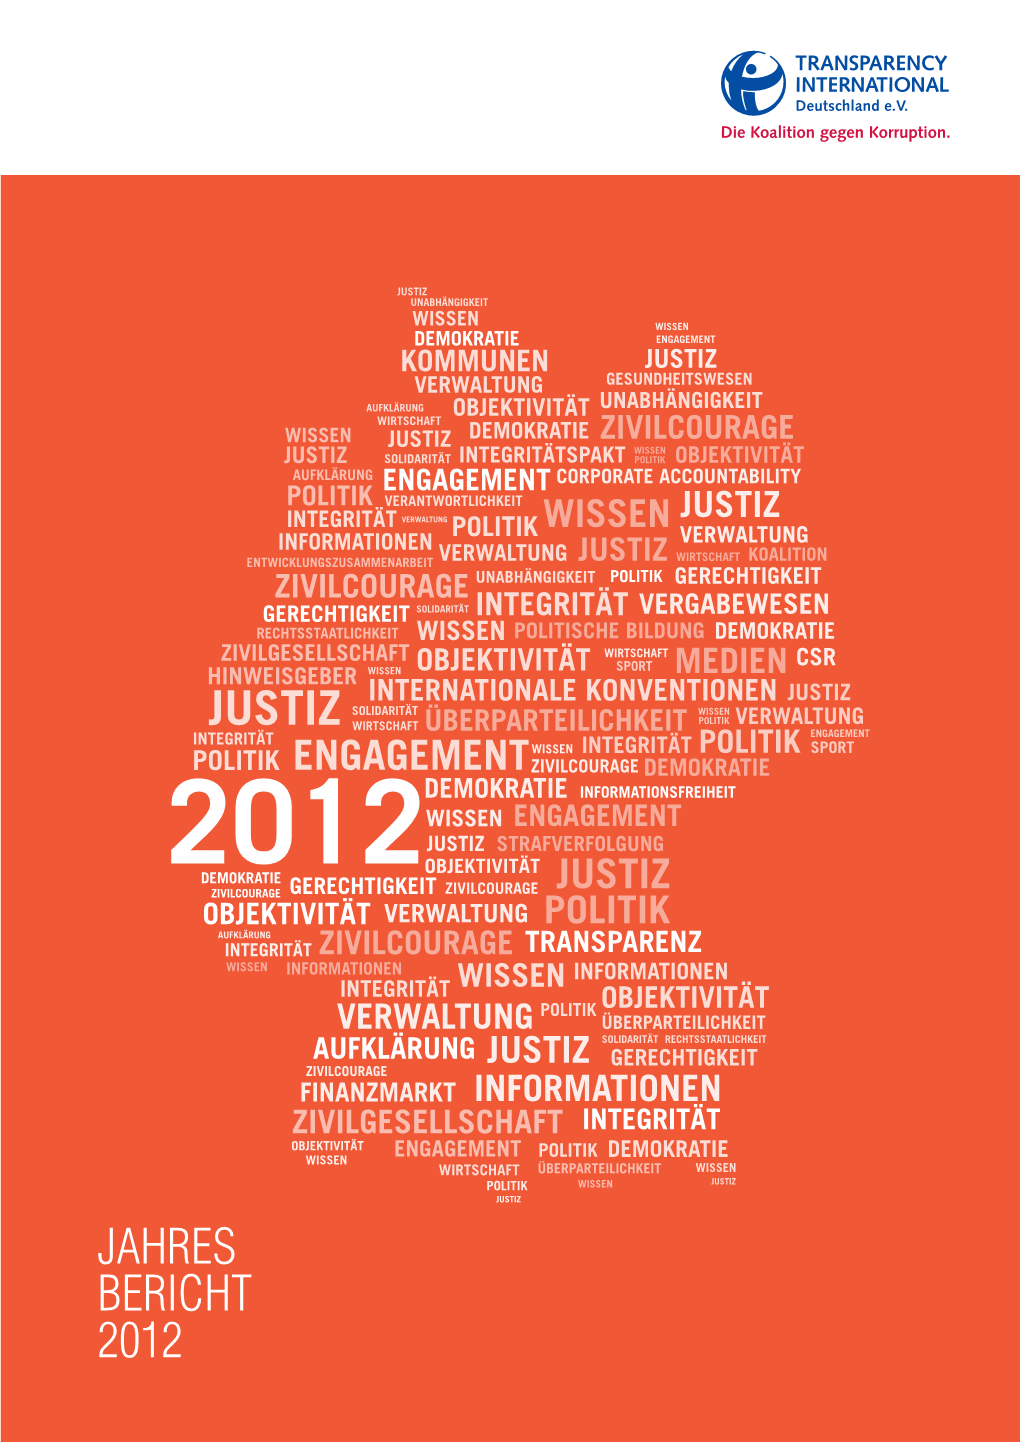 Jahres Bericht 2012 Zu Transparency Deutschland Transparency International Deutschland E